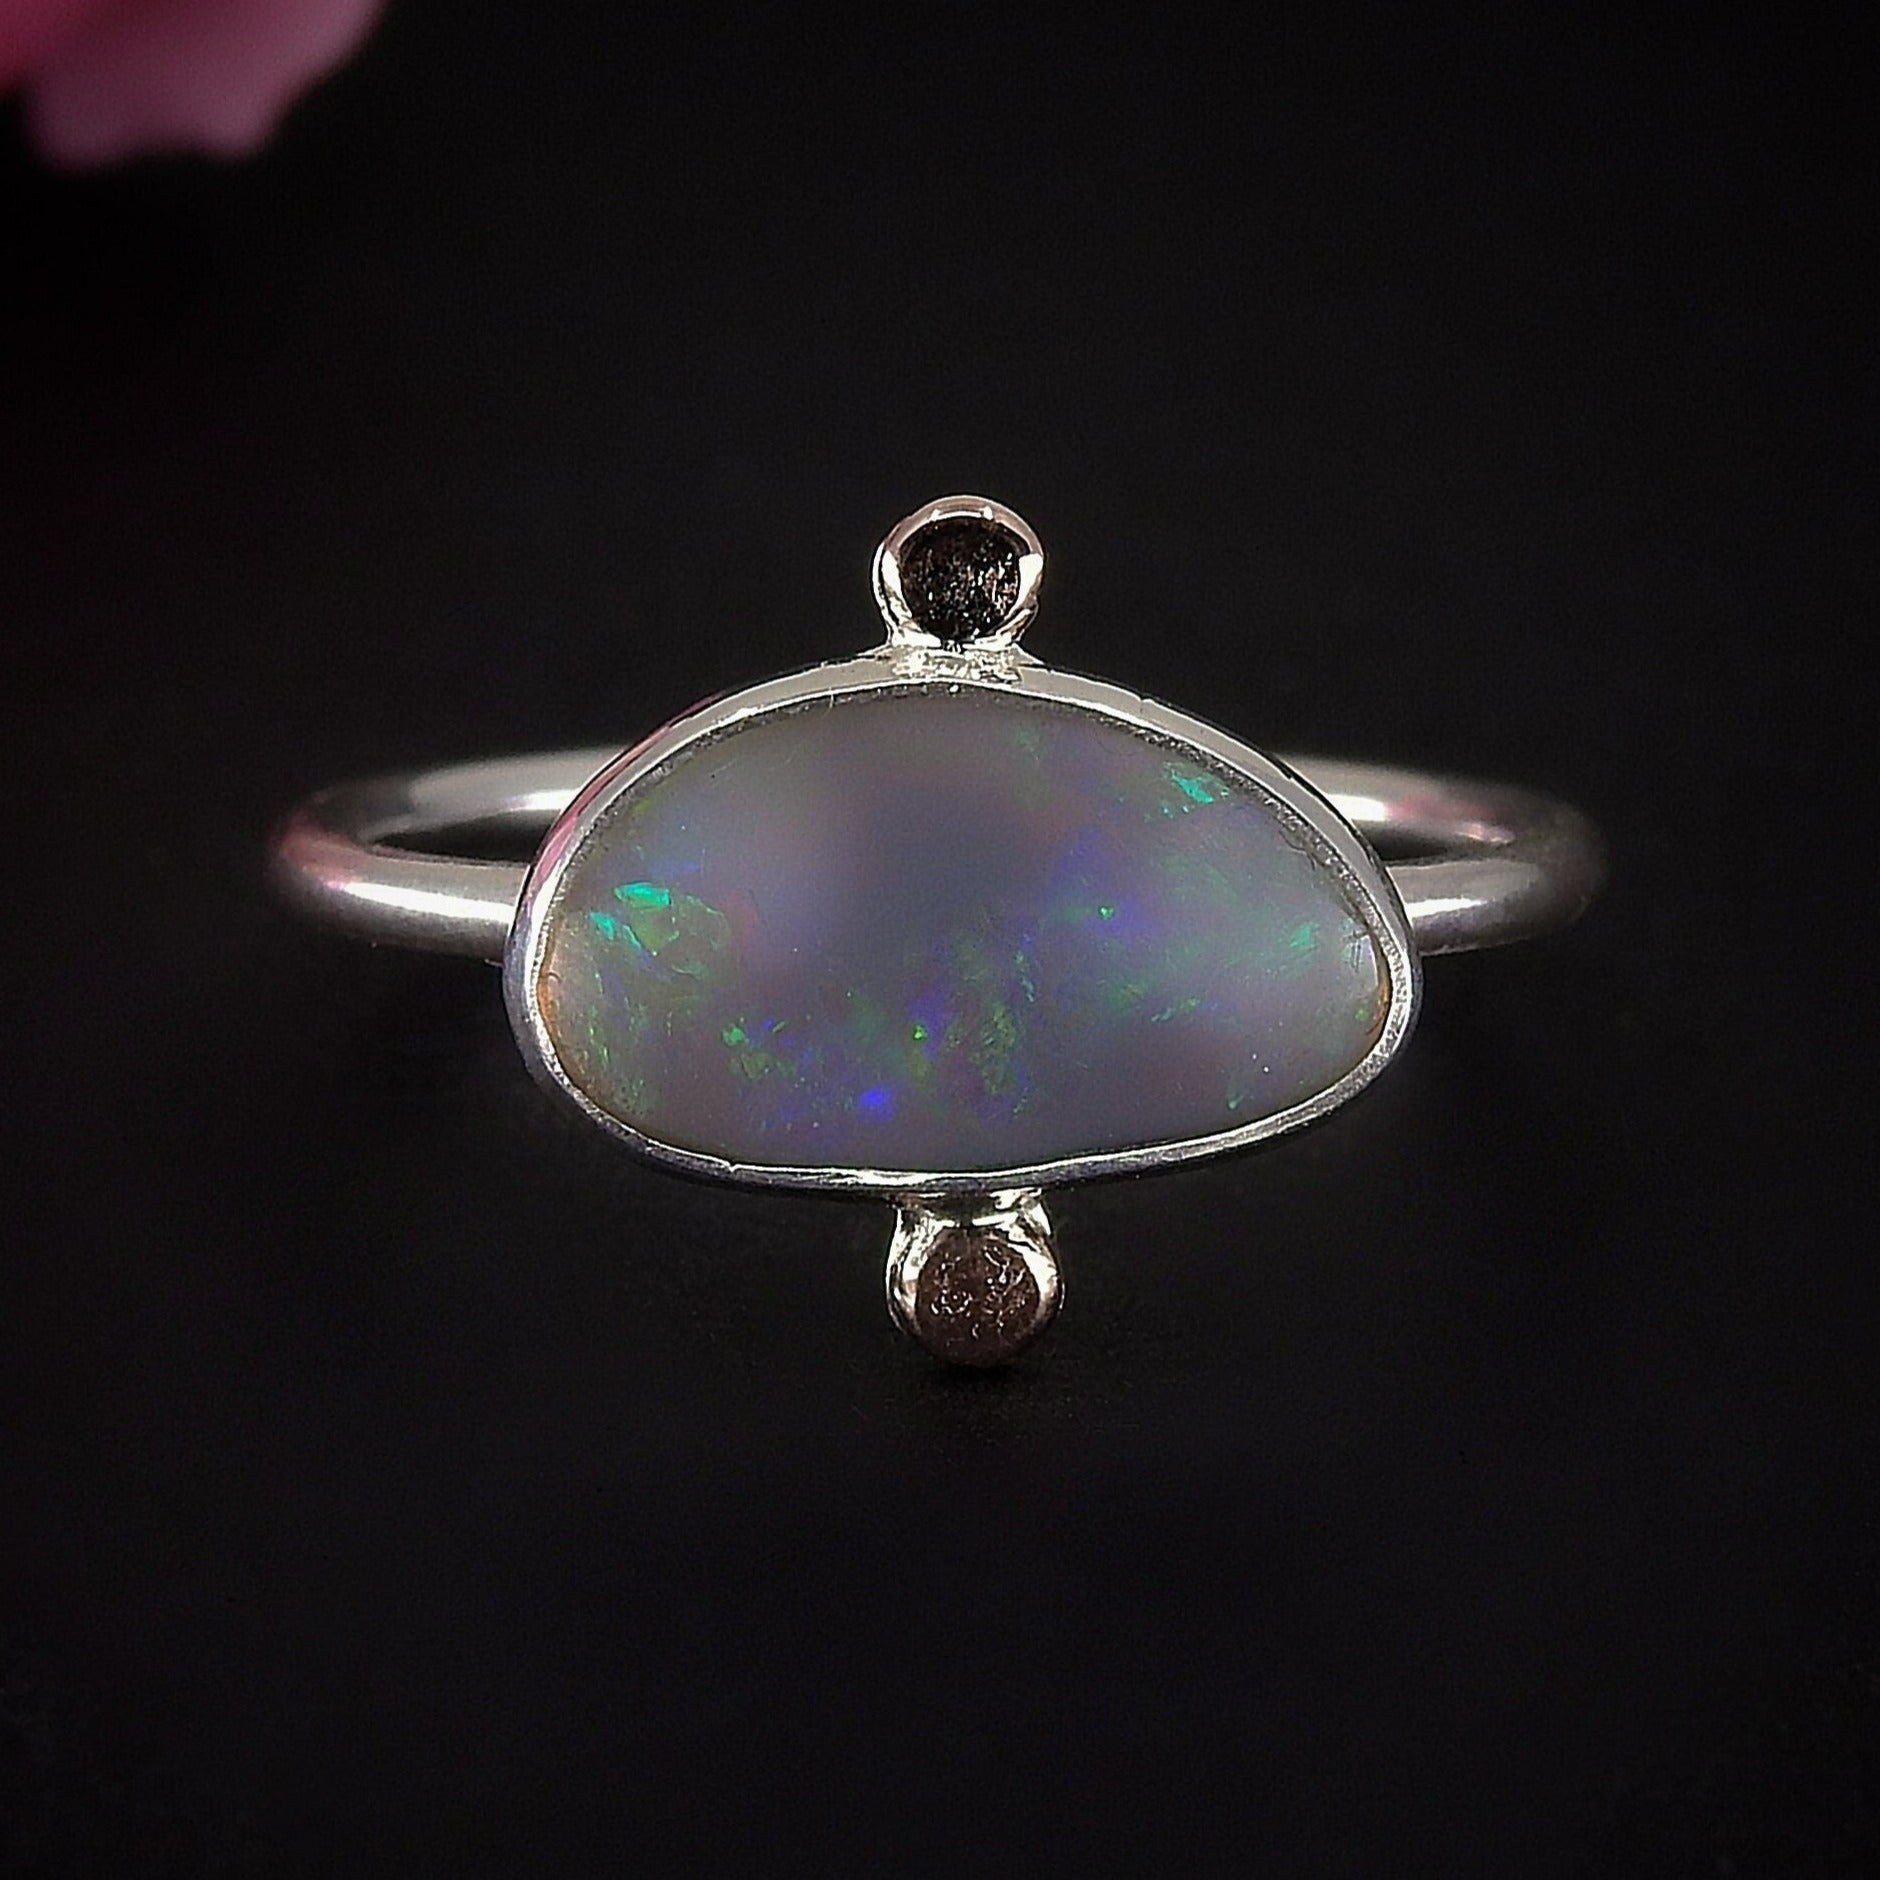 Australian Crystal Opal Ring - Size 9 1/2 